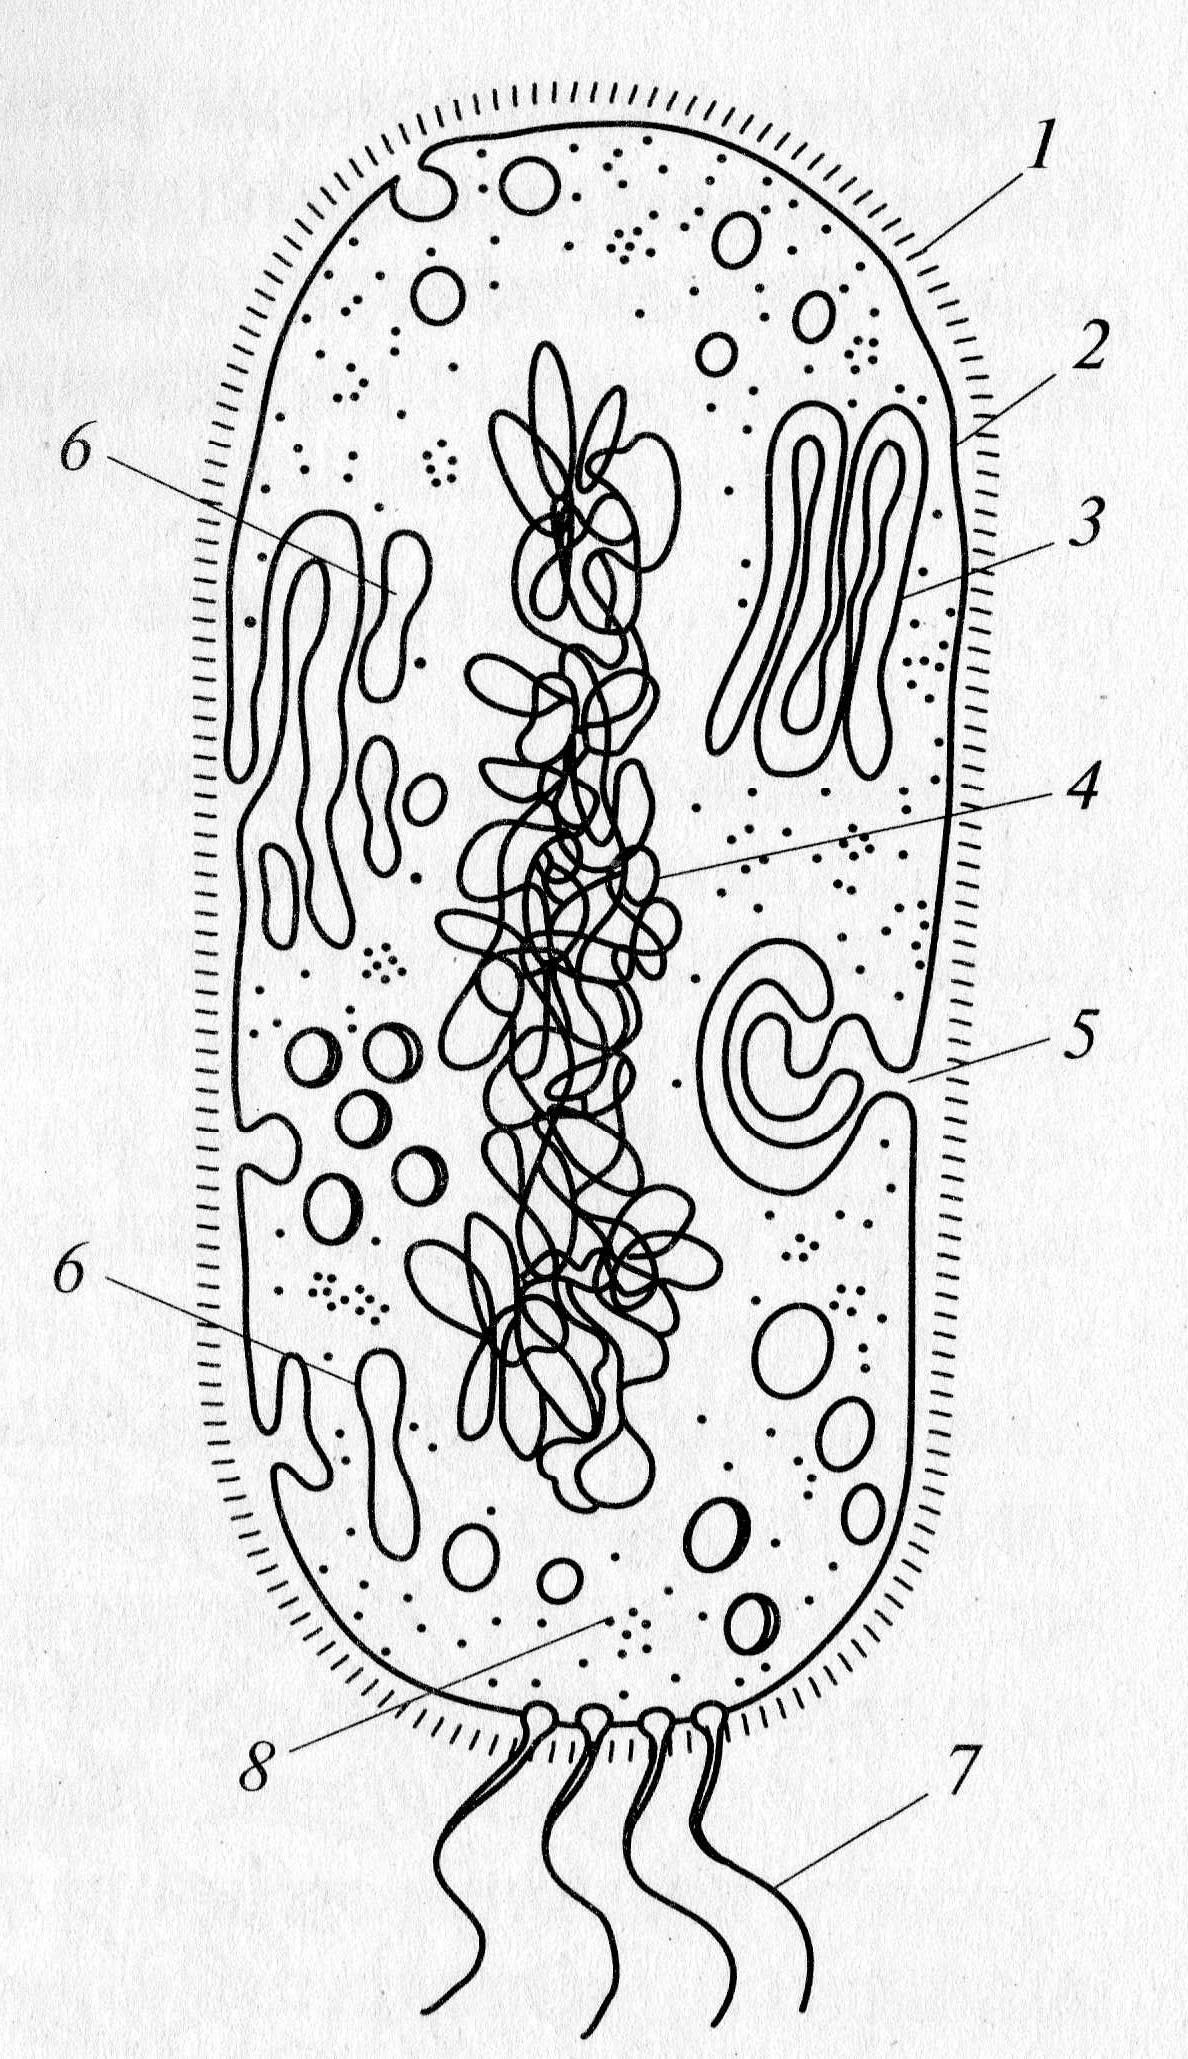 Структура клетки прокариот. Строение бактериальной клетки прокариот. Строение прокариотической клетки бактерии. Строение прокариотической бактериальной клетки. Структура прокариотической клетки.